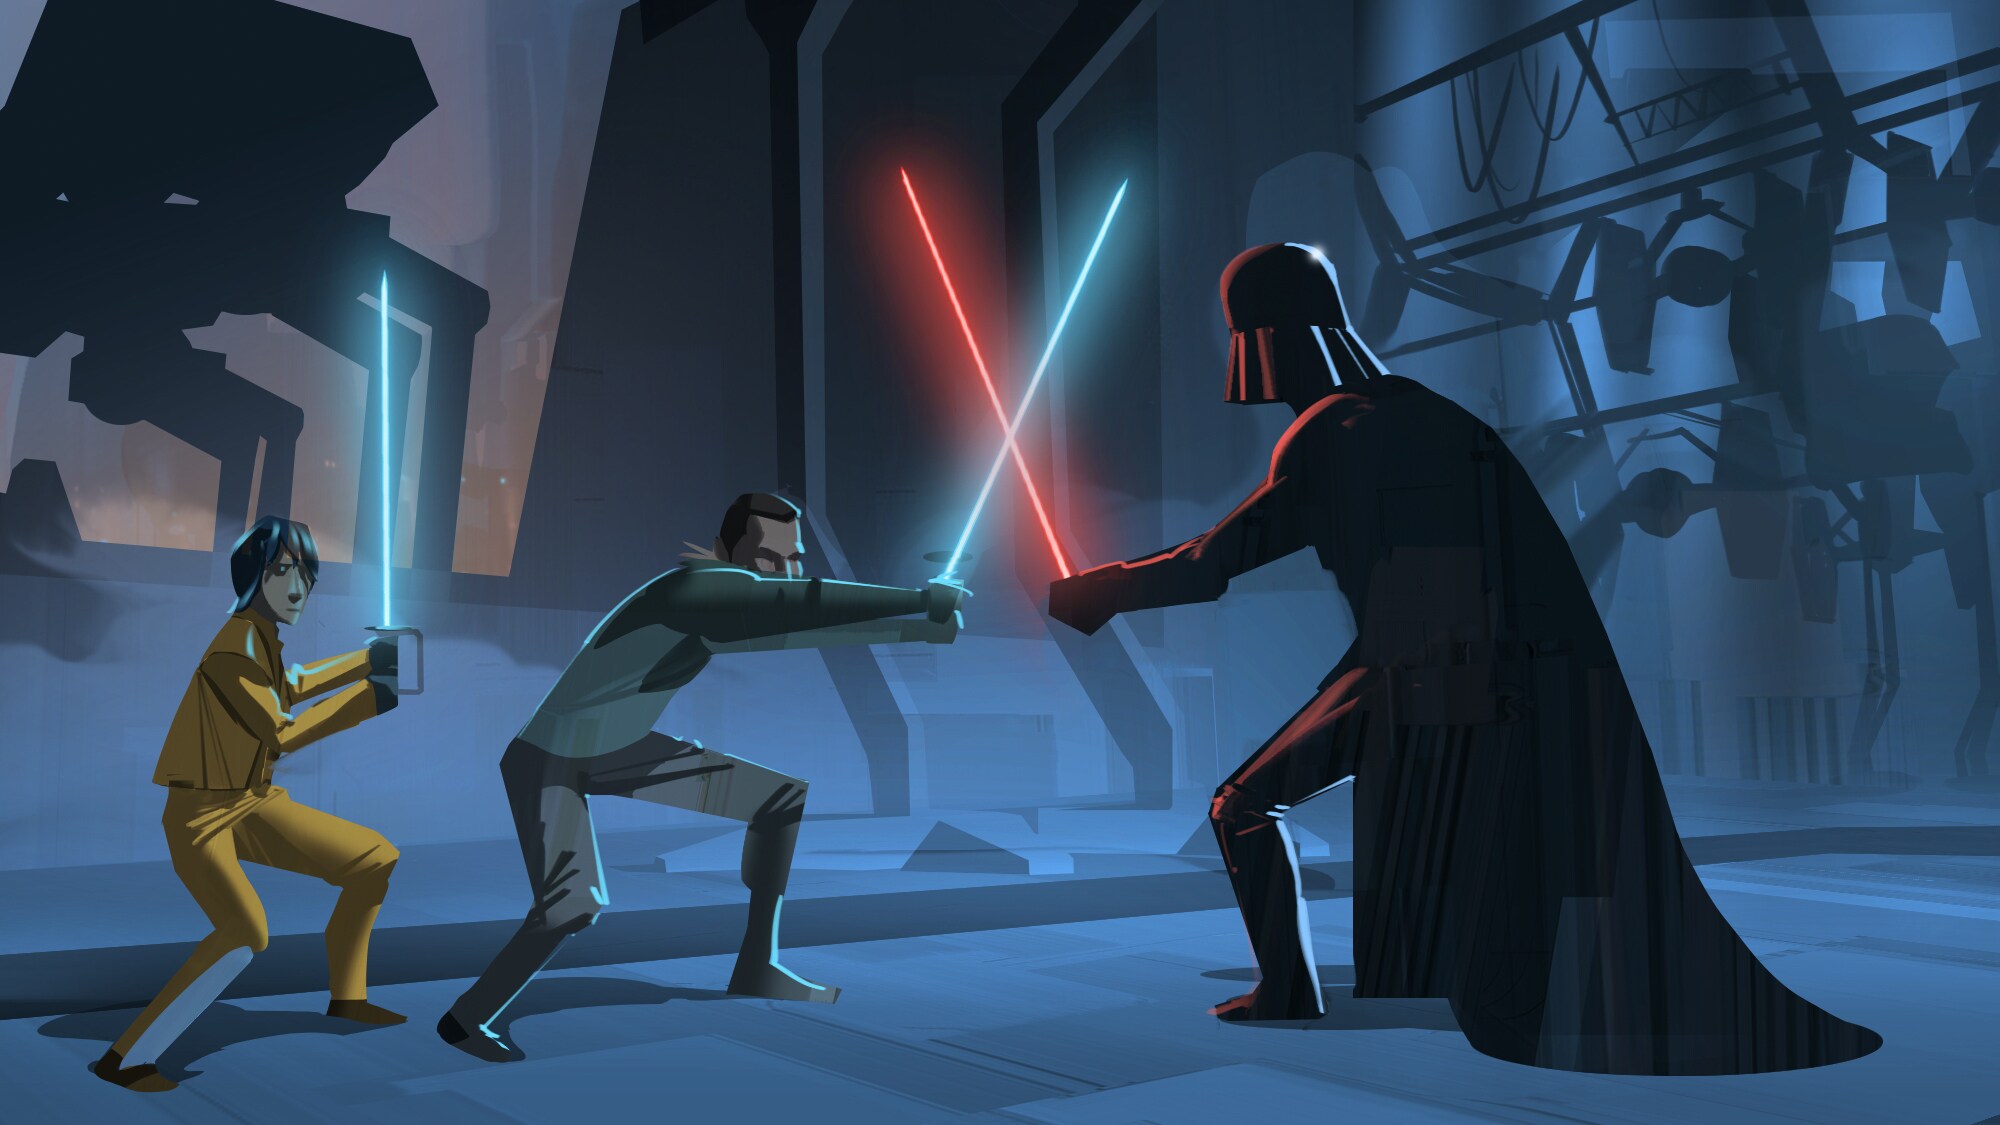 Ezra and Kanan battle Darth Vader.